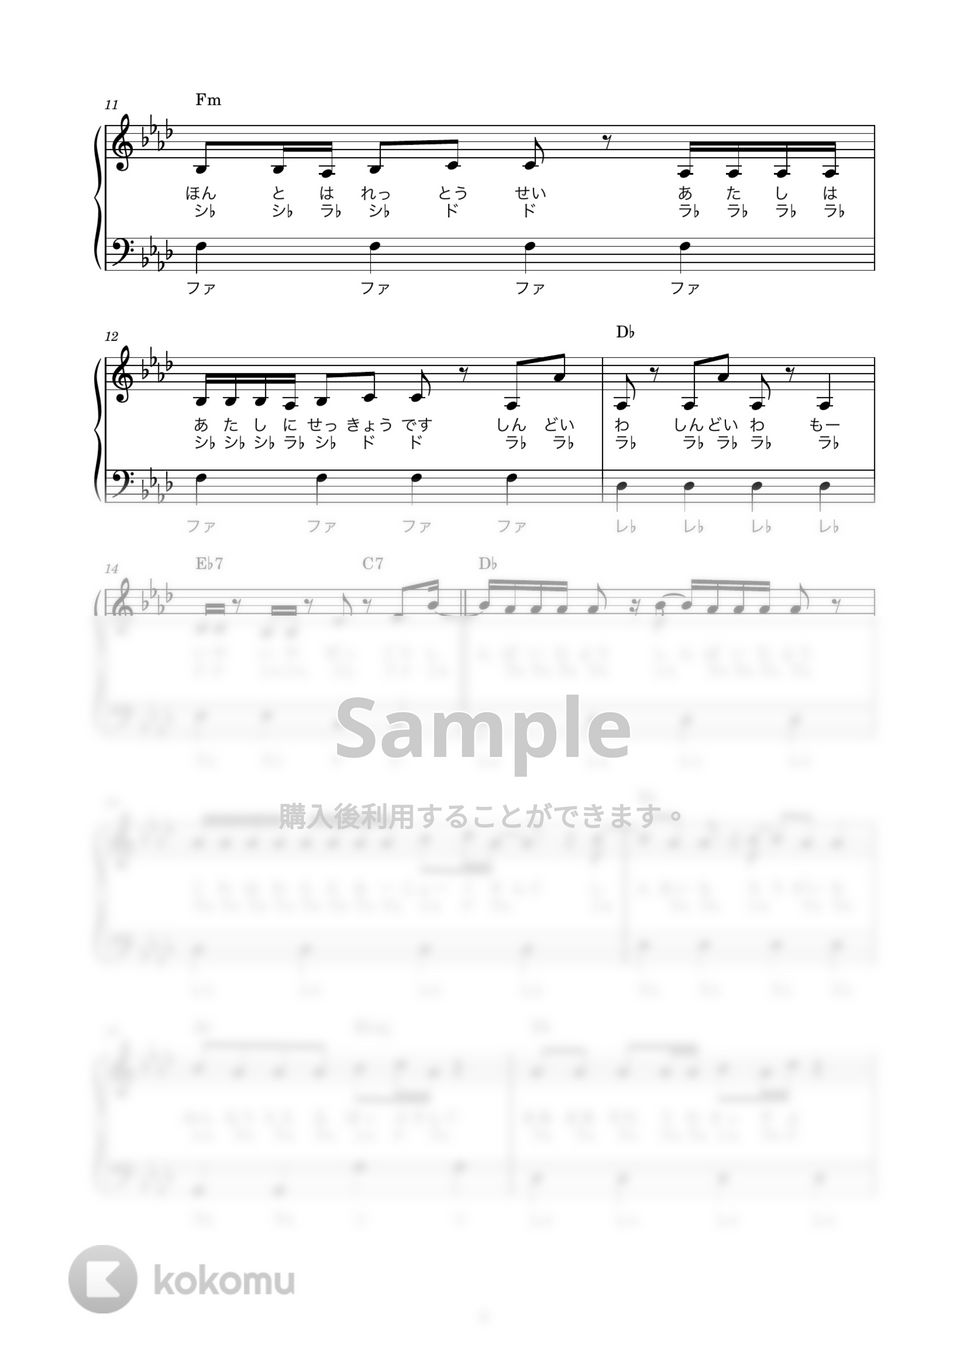 DECO*27×ピノキオピー feat.初音ミク - デビルじゃないもん (かんたん / 歌詞付き / ドレミ付き / 初心者) by piano.tokyo